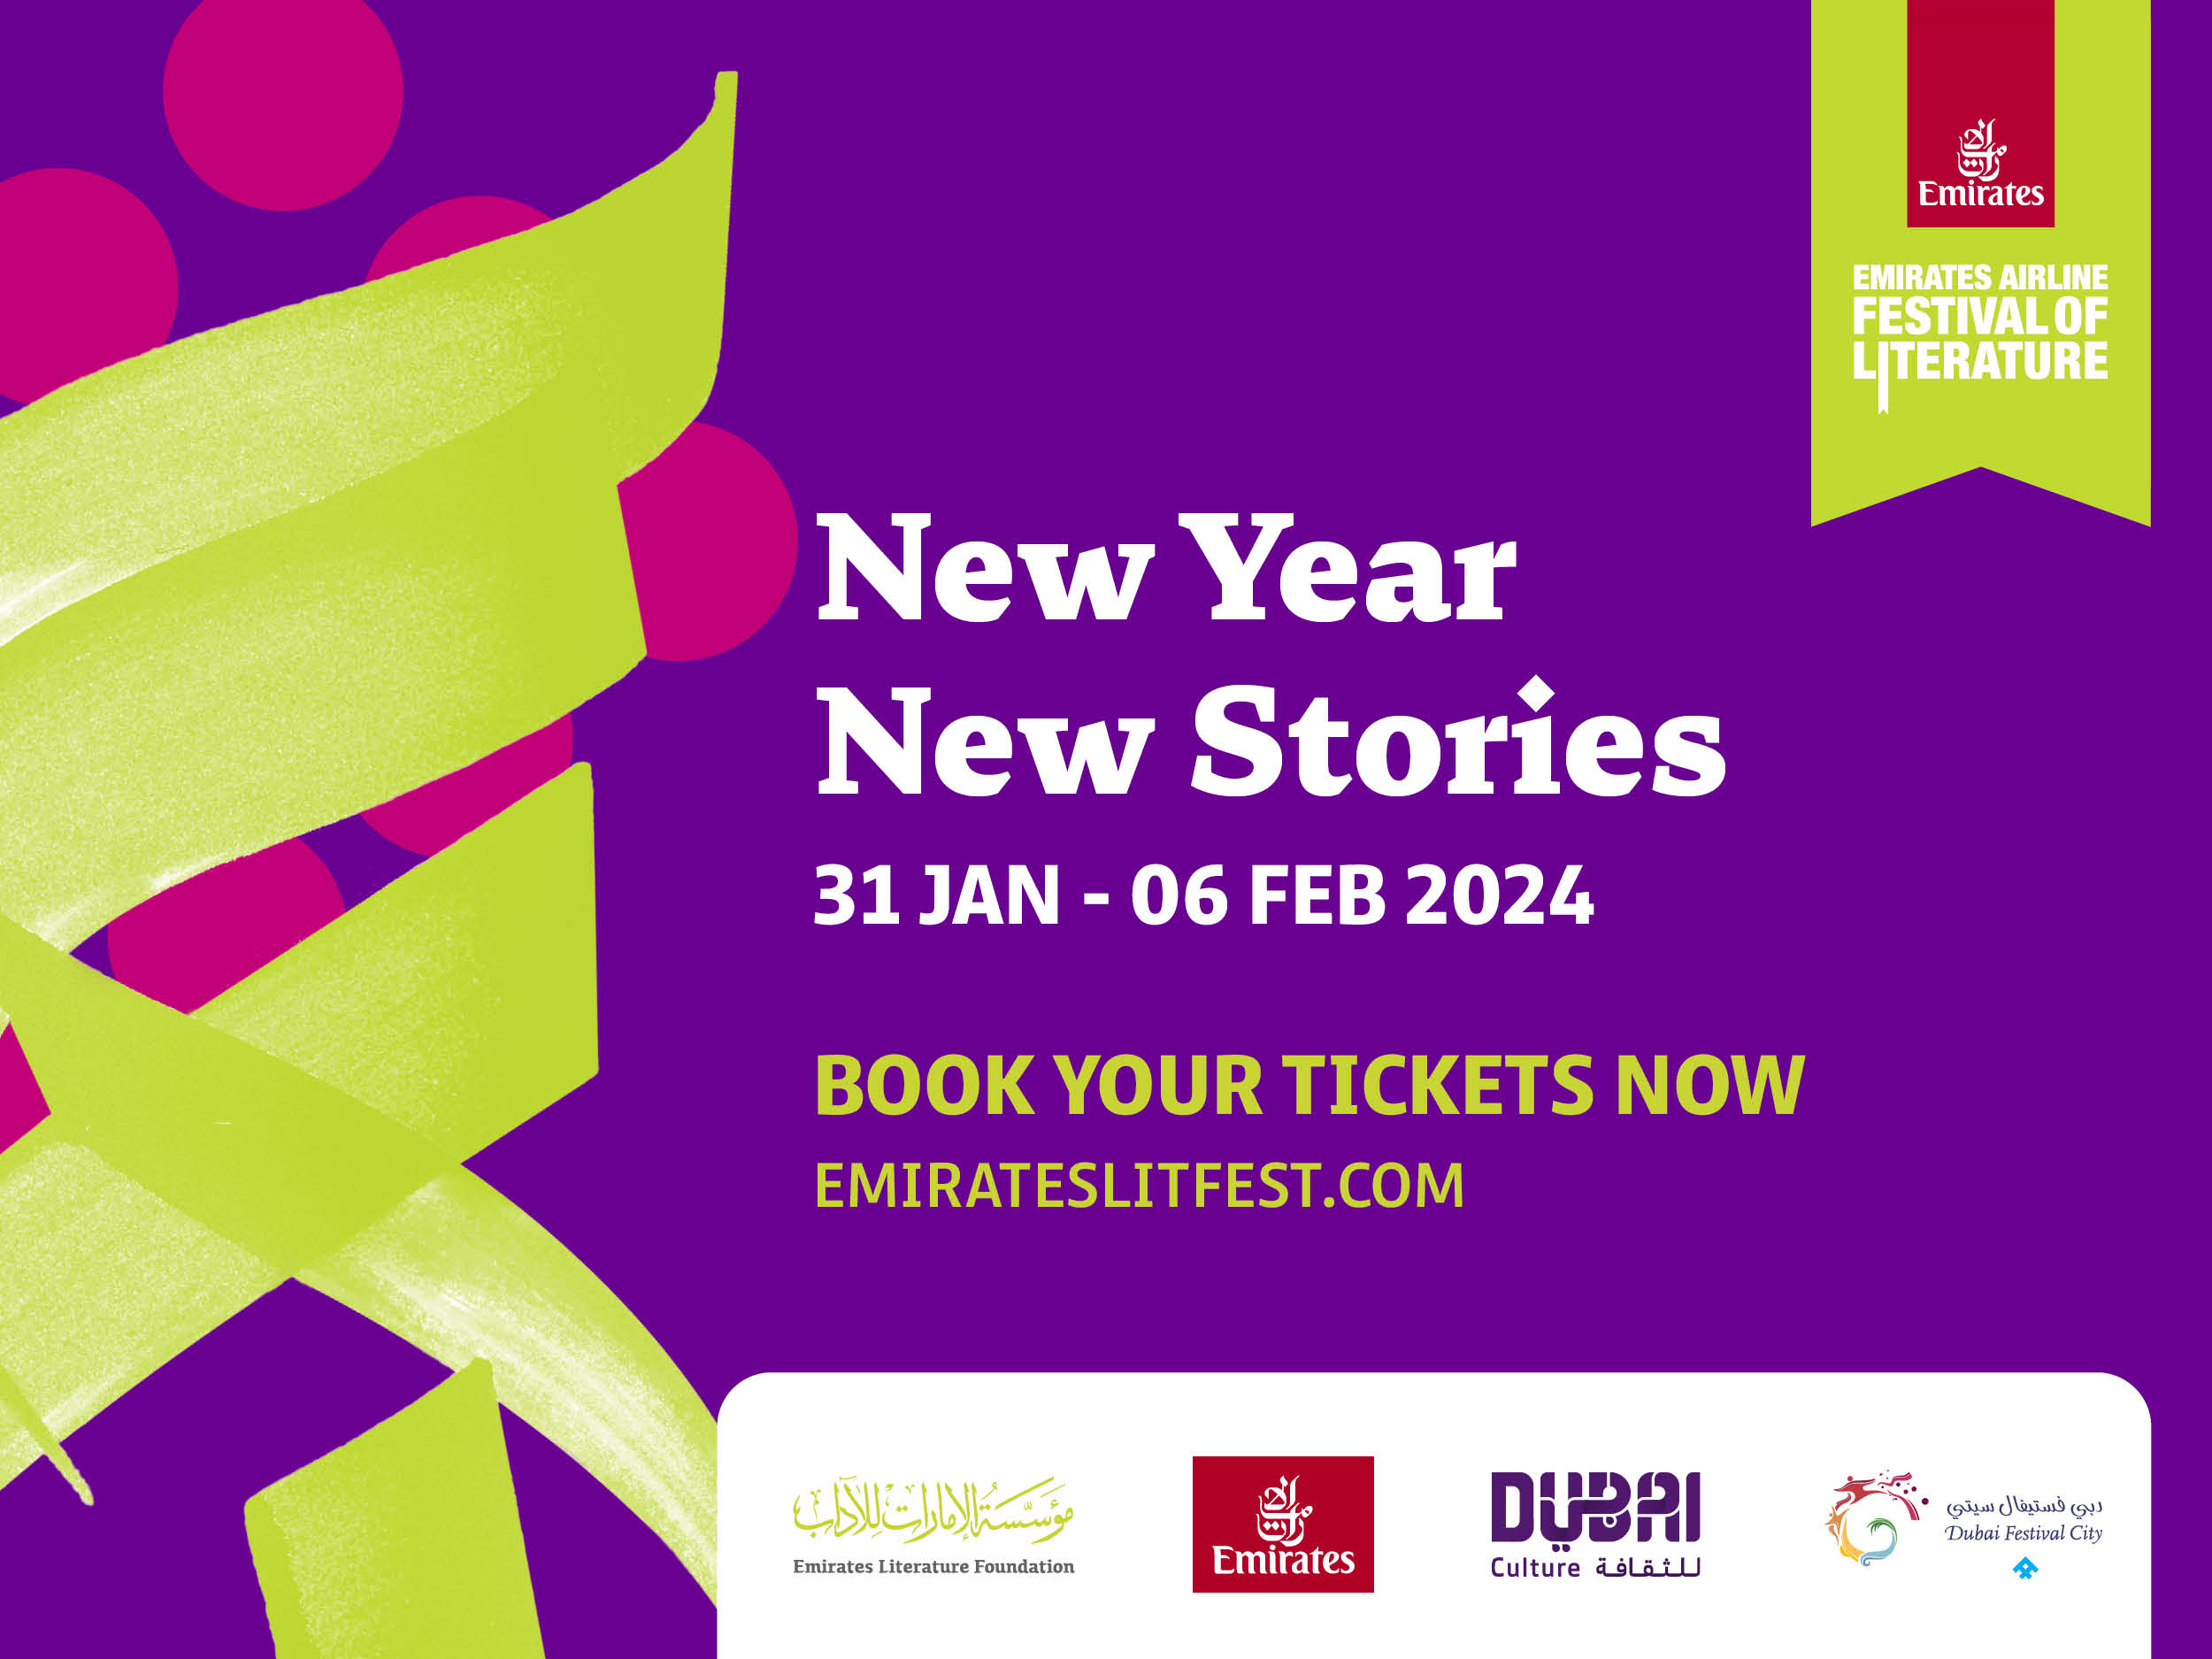 Emirates Literature Festival 2024